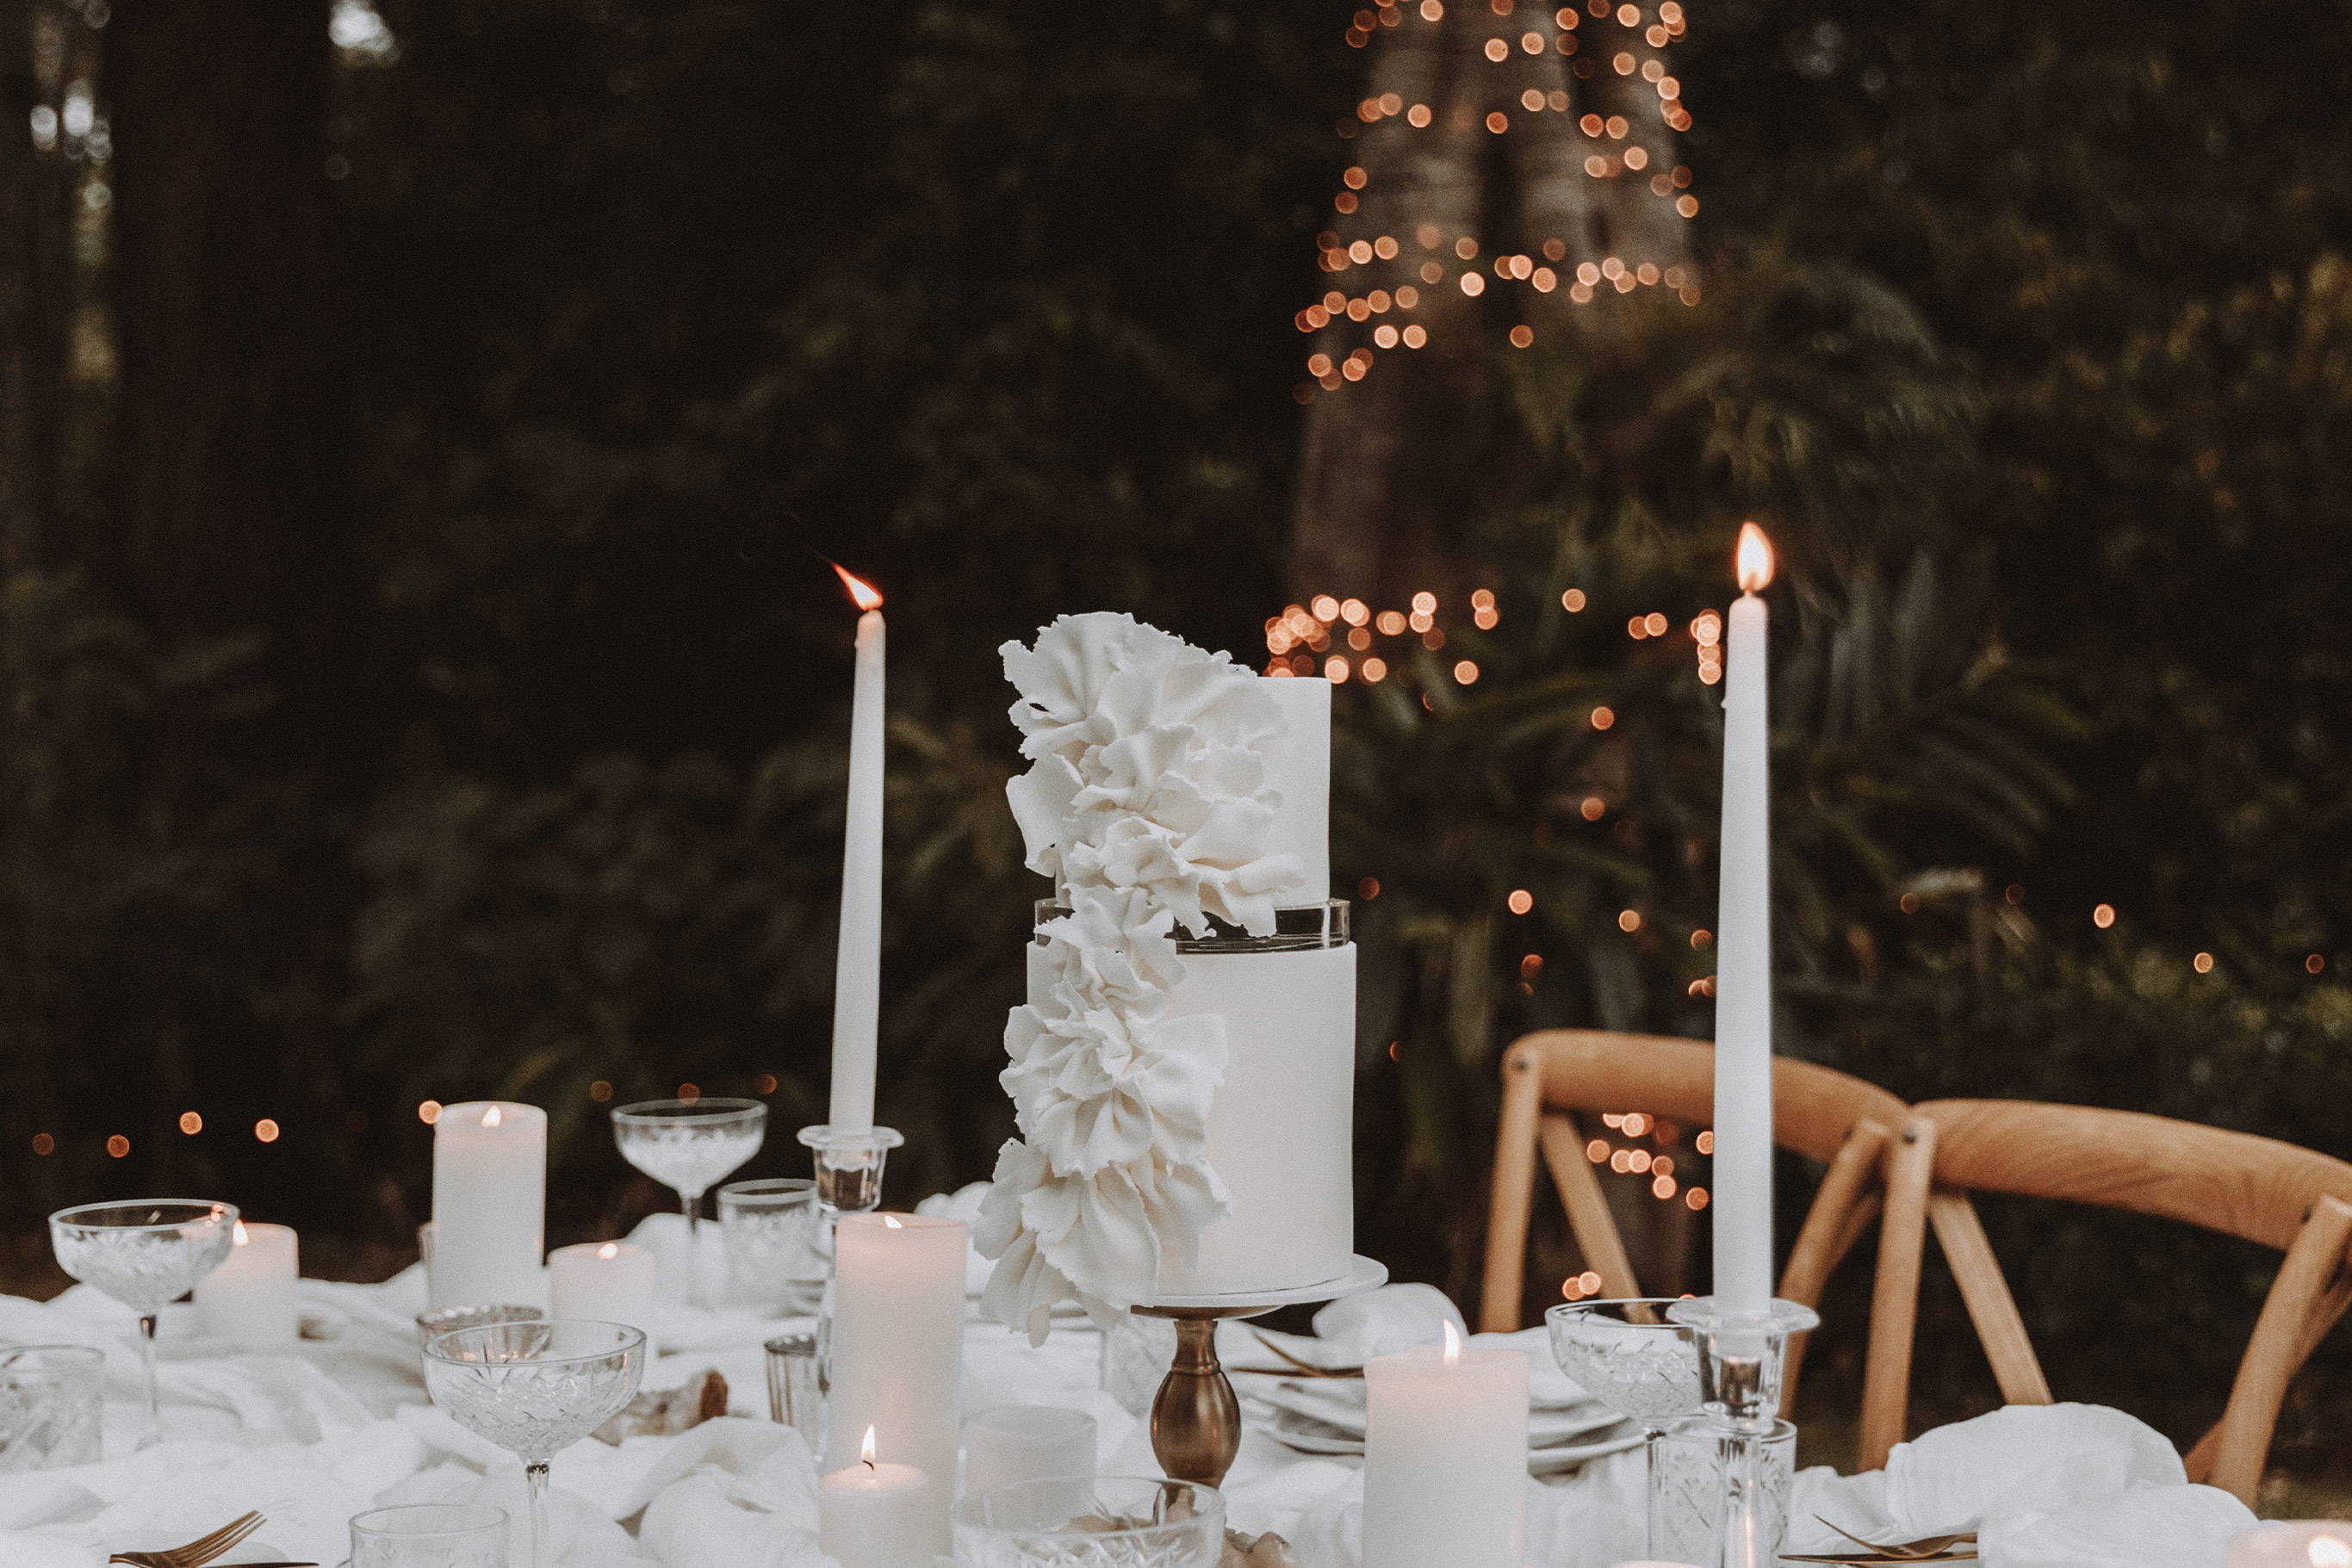 Weiße Hochzeitstorte mit weißen Blumen und Kerzen auf dem Hochzeitstisch.